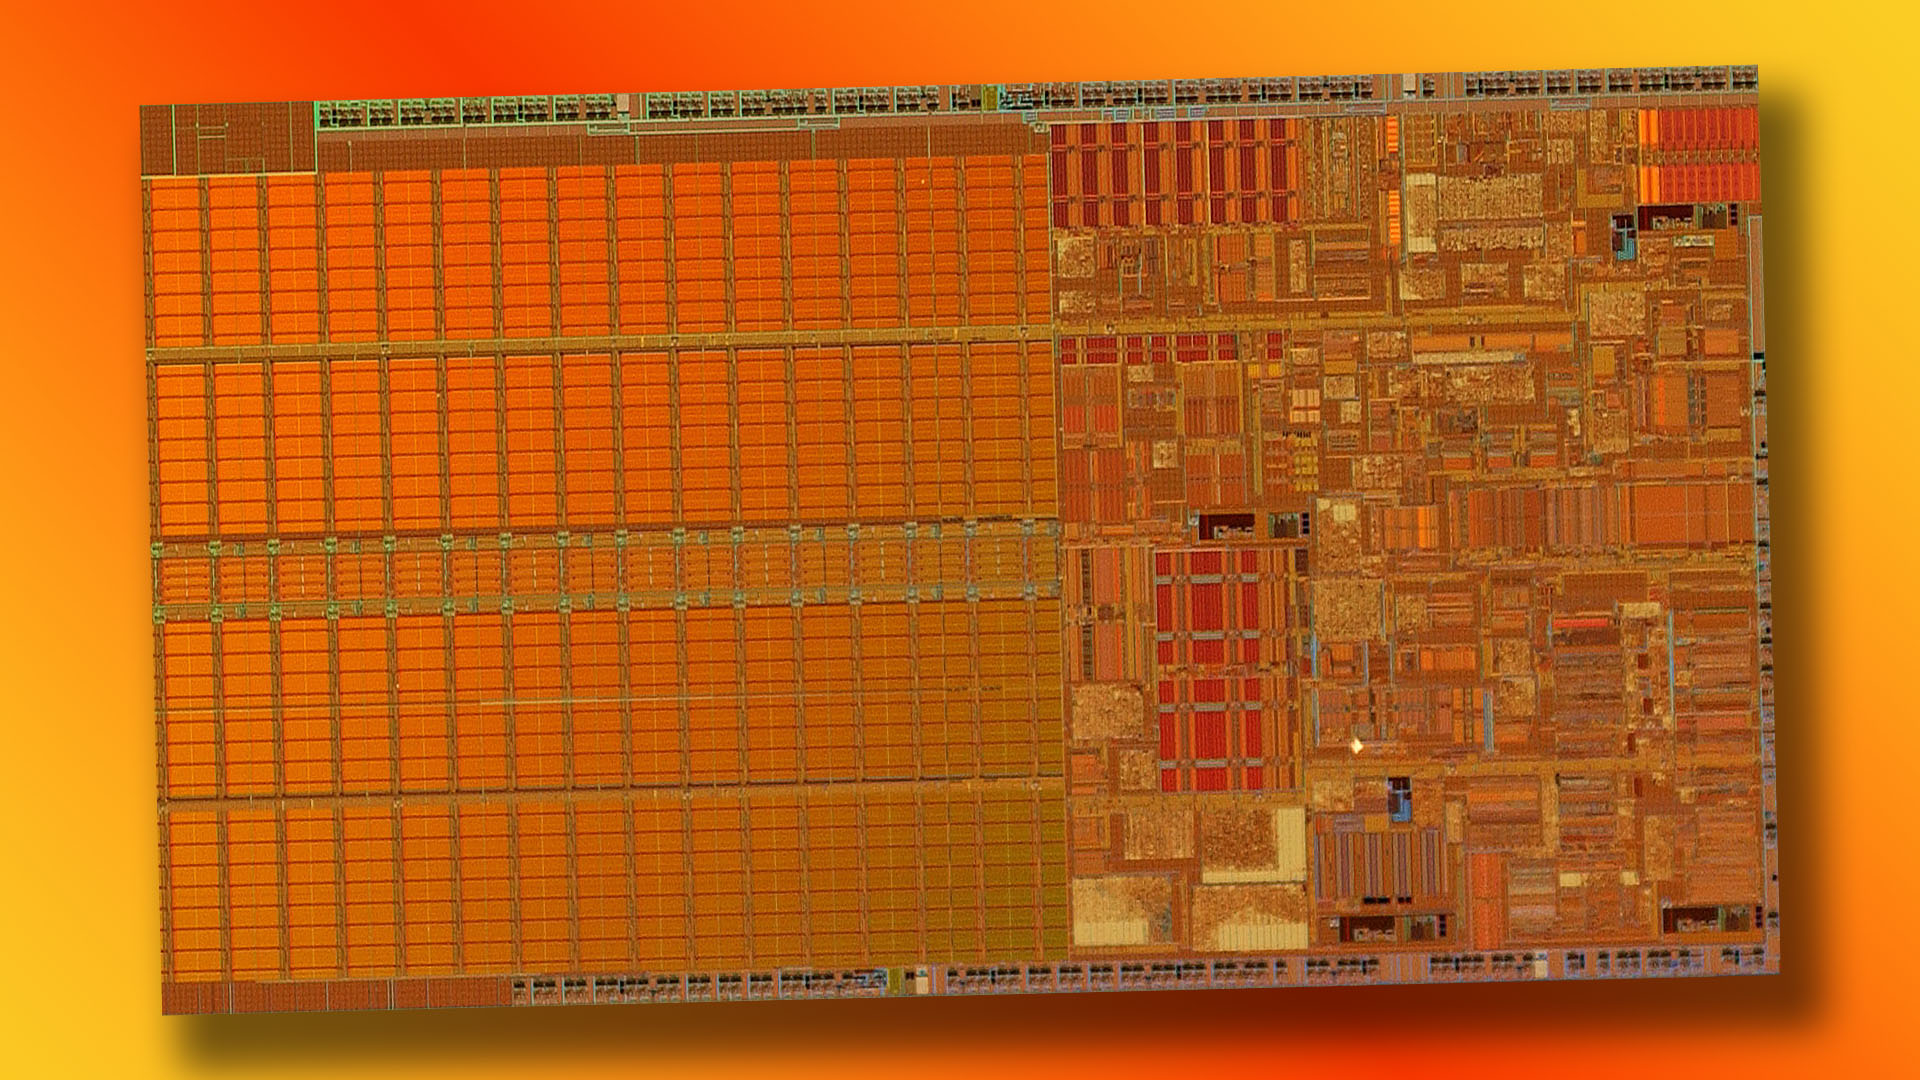 Intel Pentium 4: Pentium M die shot